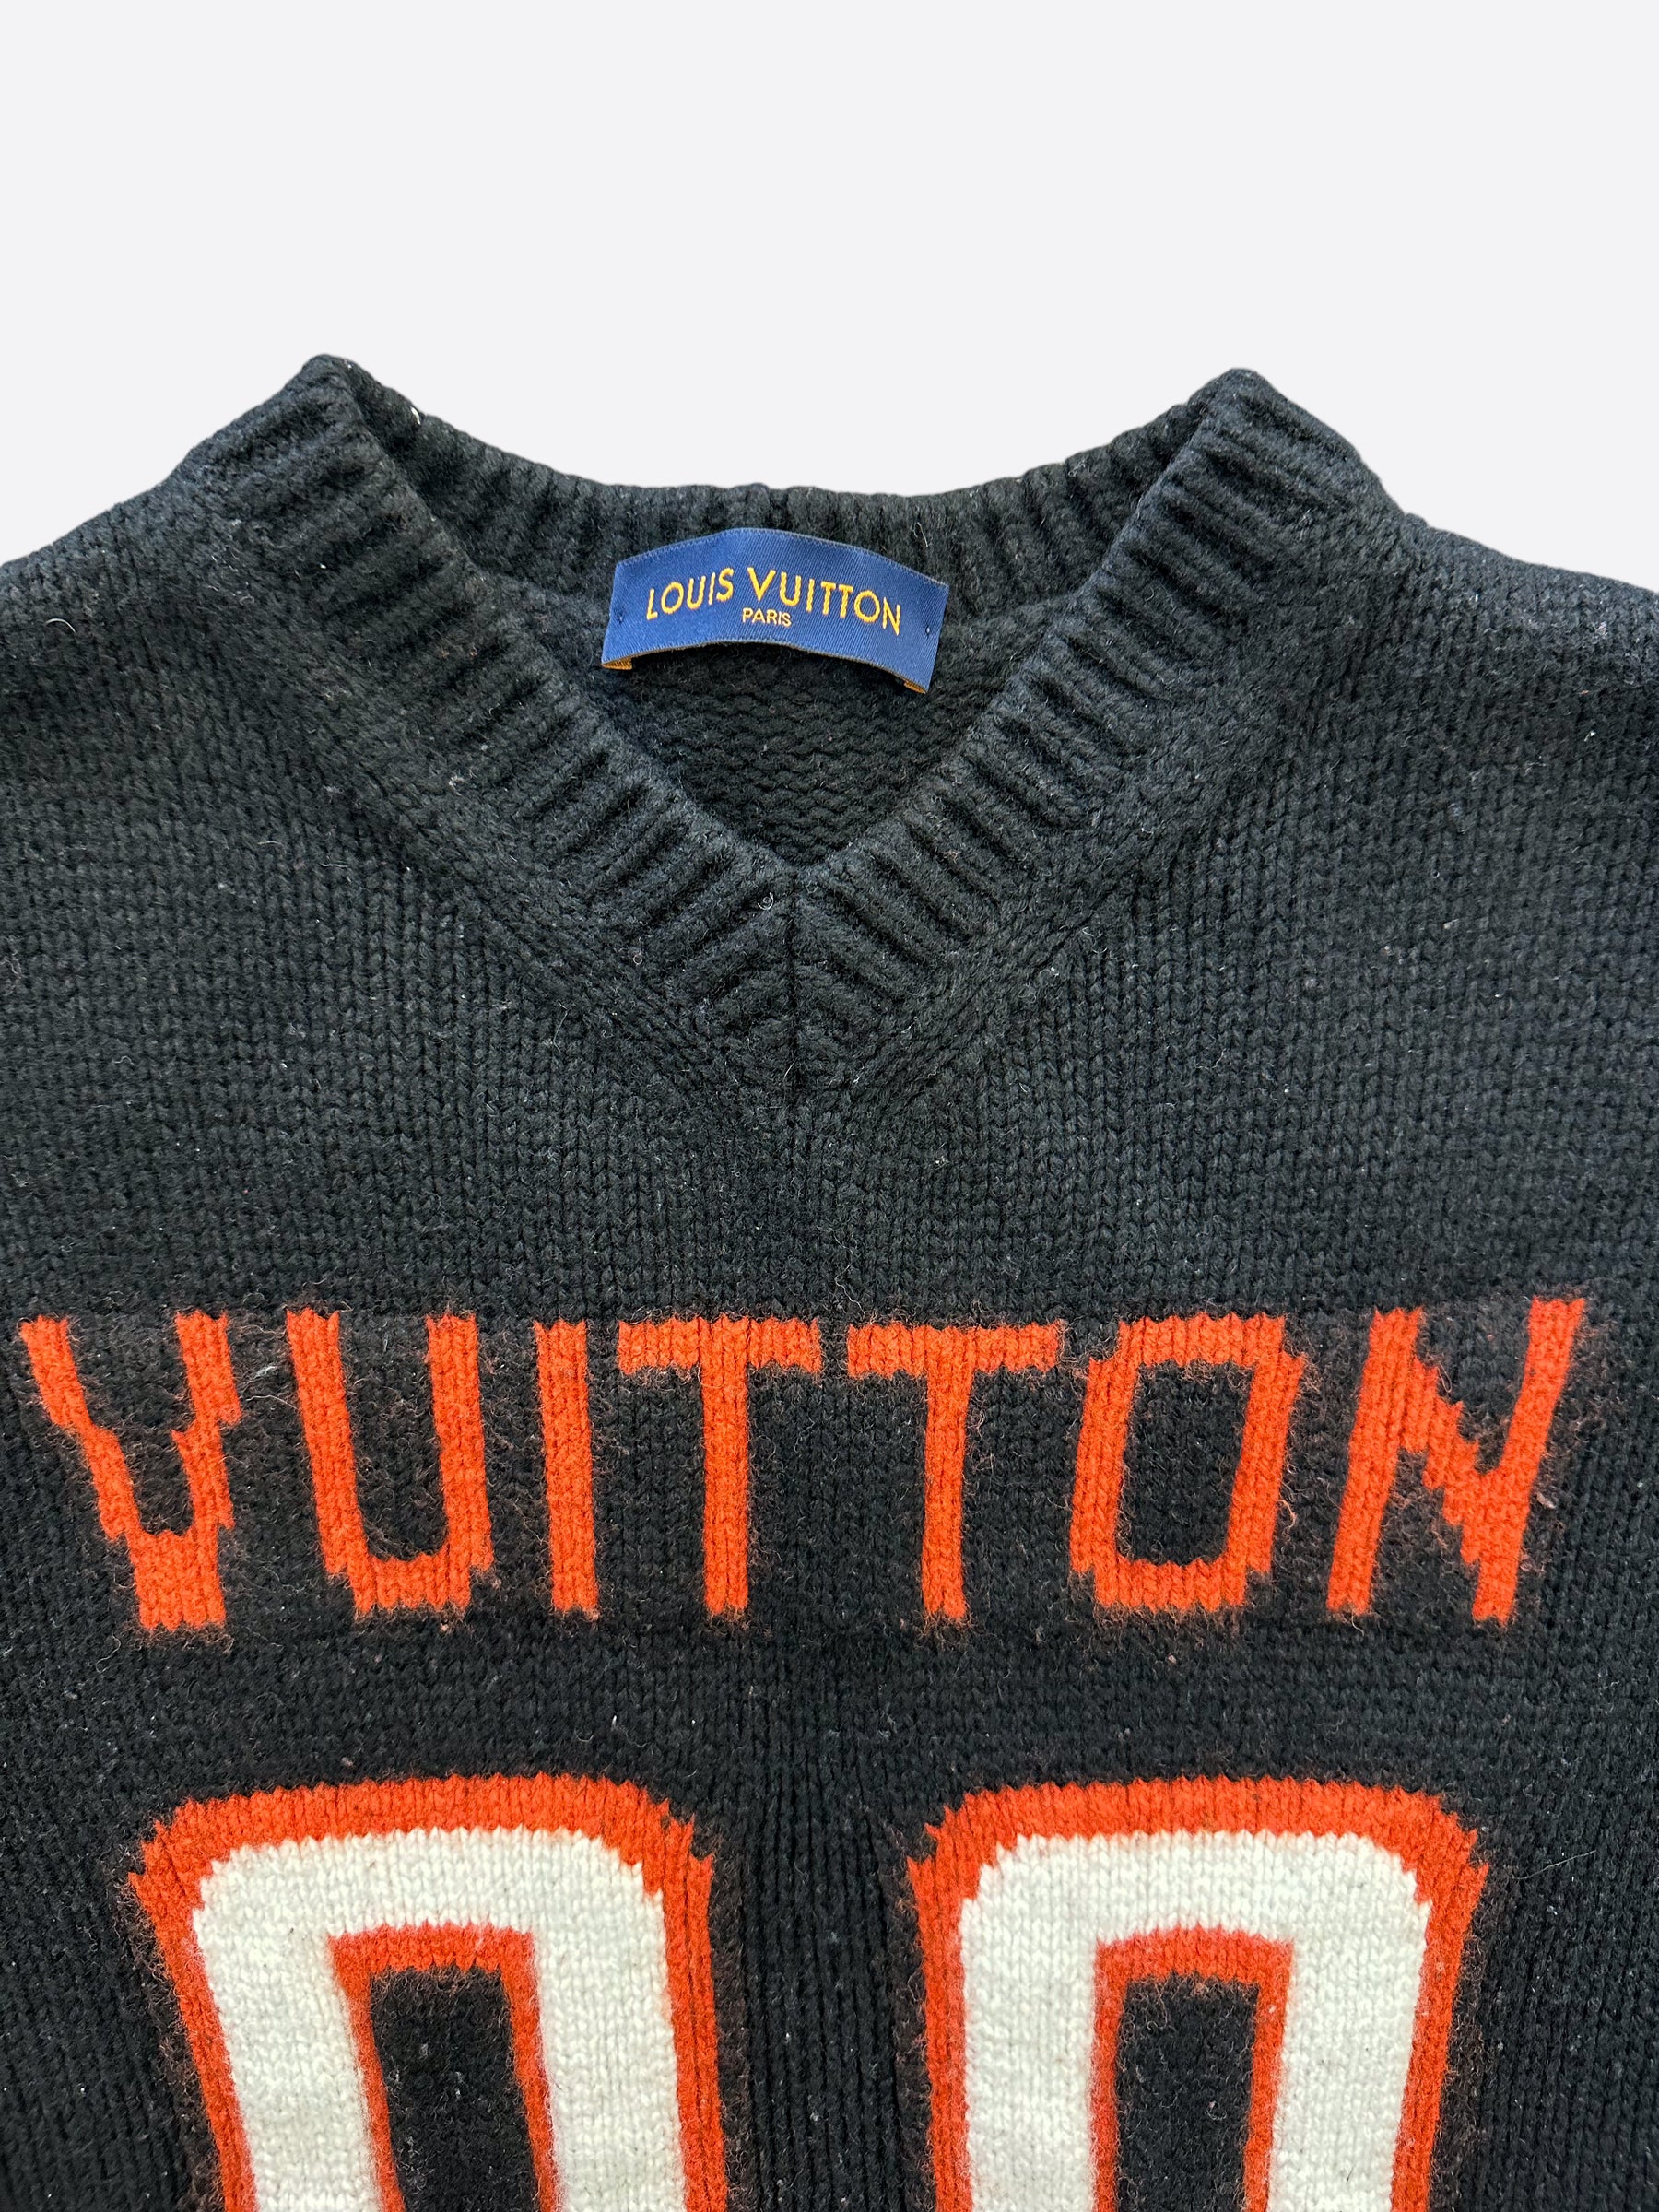 Louis Vuitton Black Knit Crew Neck Sweater S Louis Vuitton